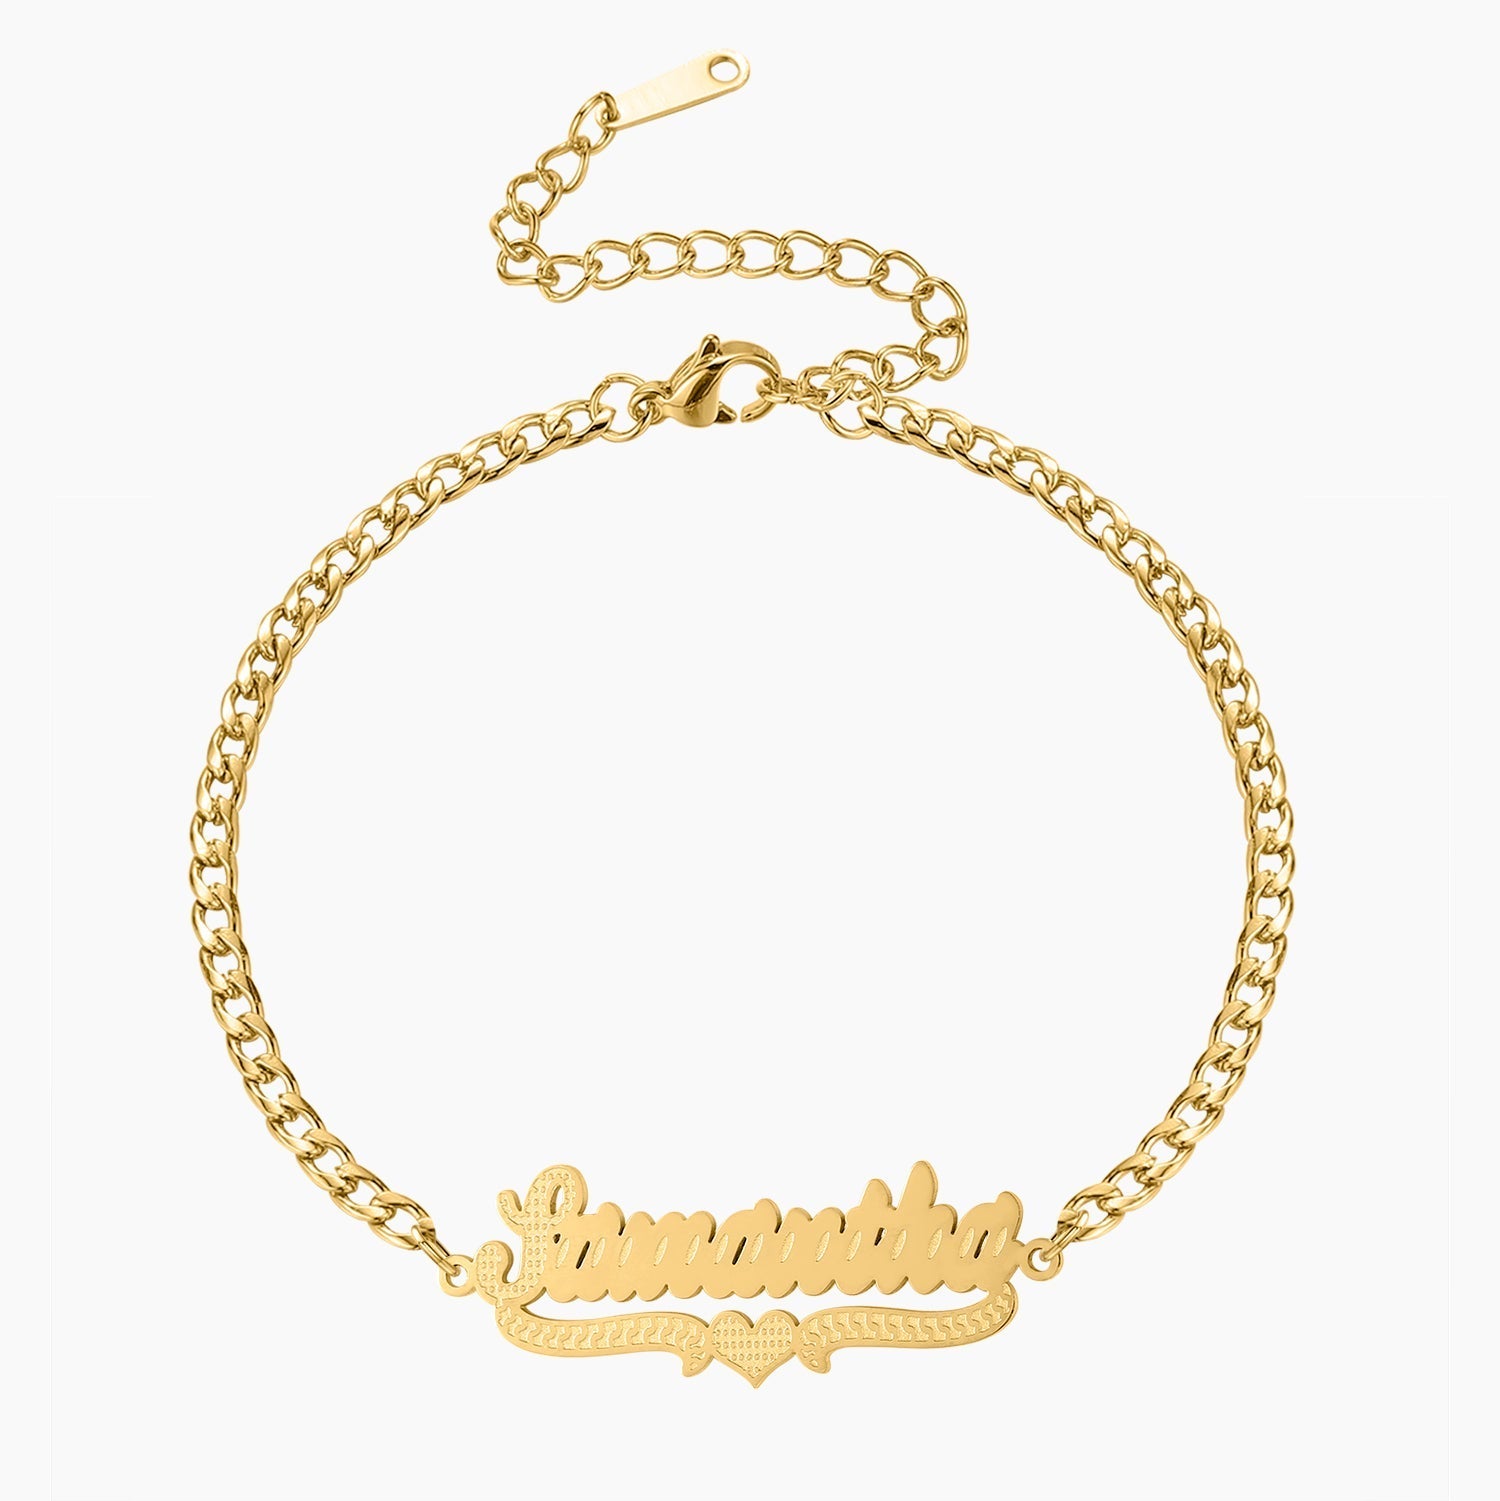 Gold Name Anklets | Gold Name Bracelets